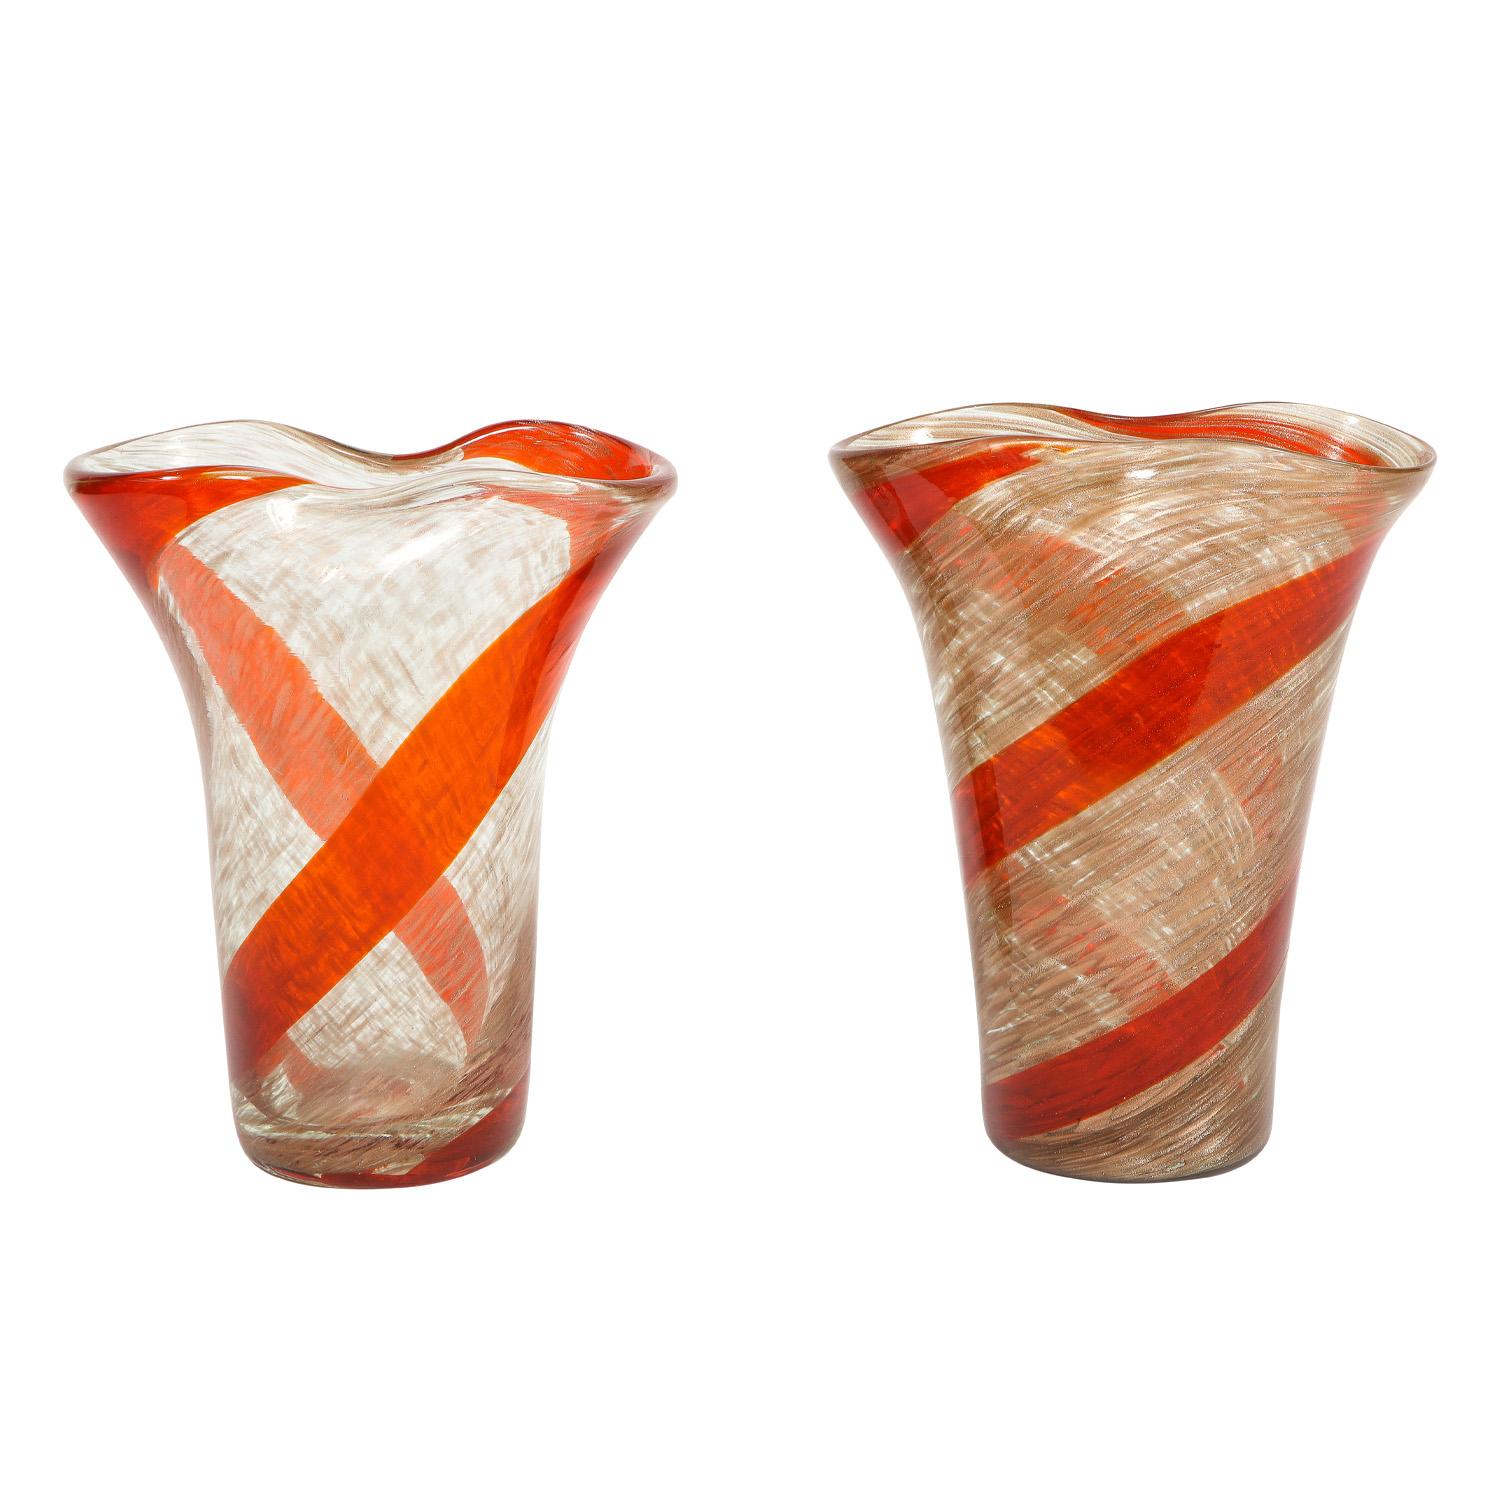 2 superbes vases en verre soufflé à la main avec un motif de spirale rouge par Fratelli Toso, Murano, Italie, années 1950. Ils sont pincés au sommet avec de l'aventurine (or) dans tout le verre. Ces deux-là brillent comme des bijoux.